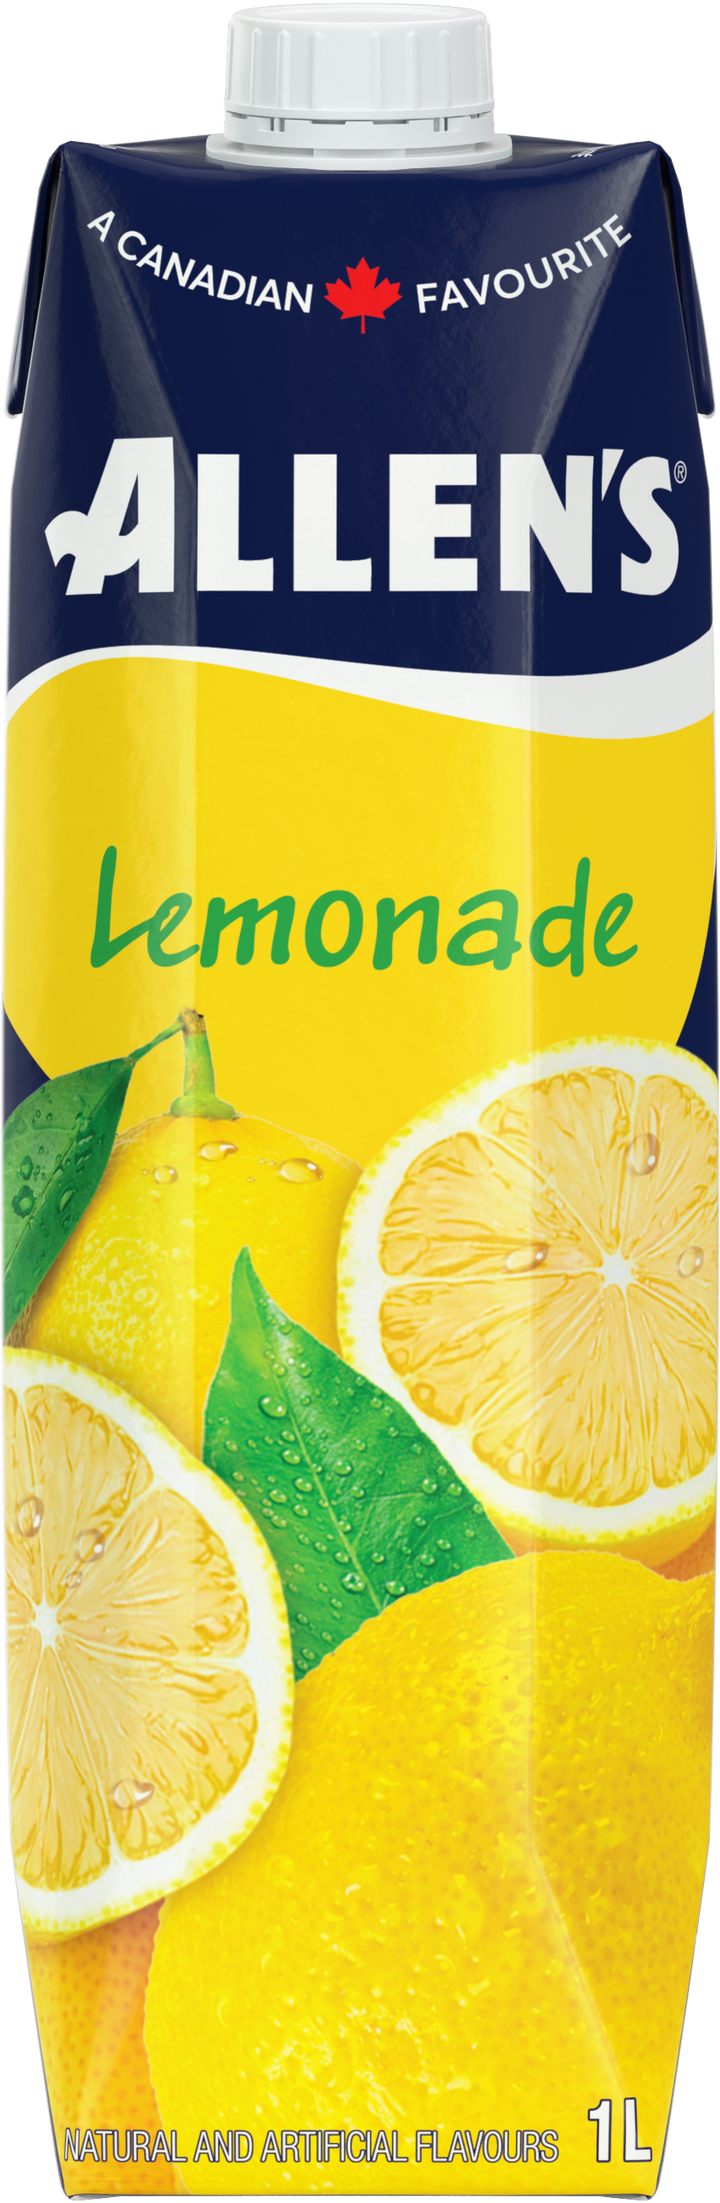 Lemonade - Allen's - Juices and Beverages - 12 x 1L Tetra Pack/Case